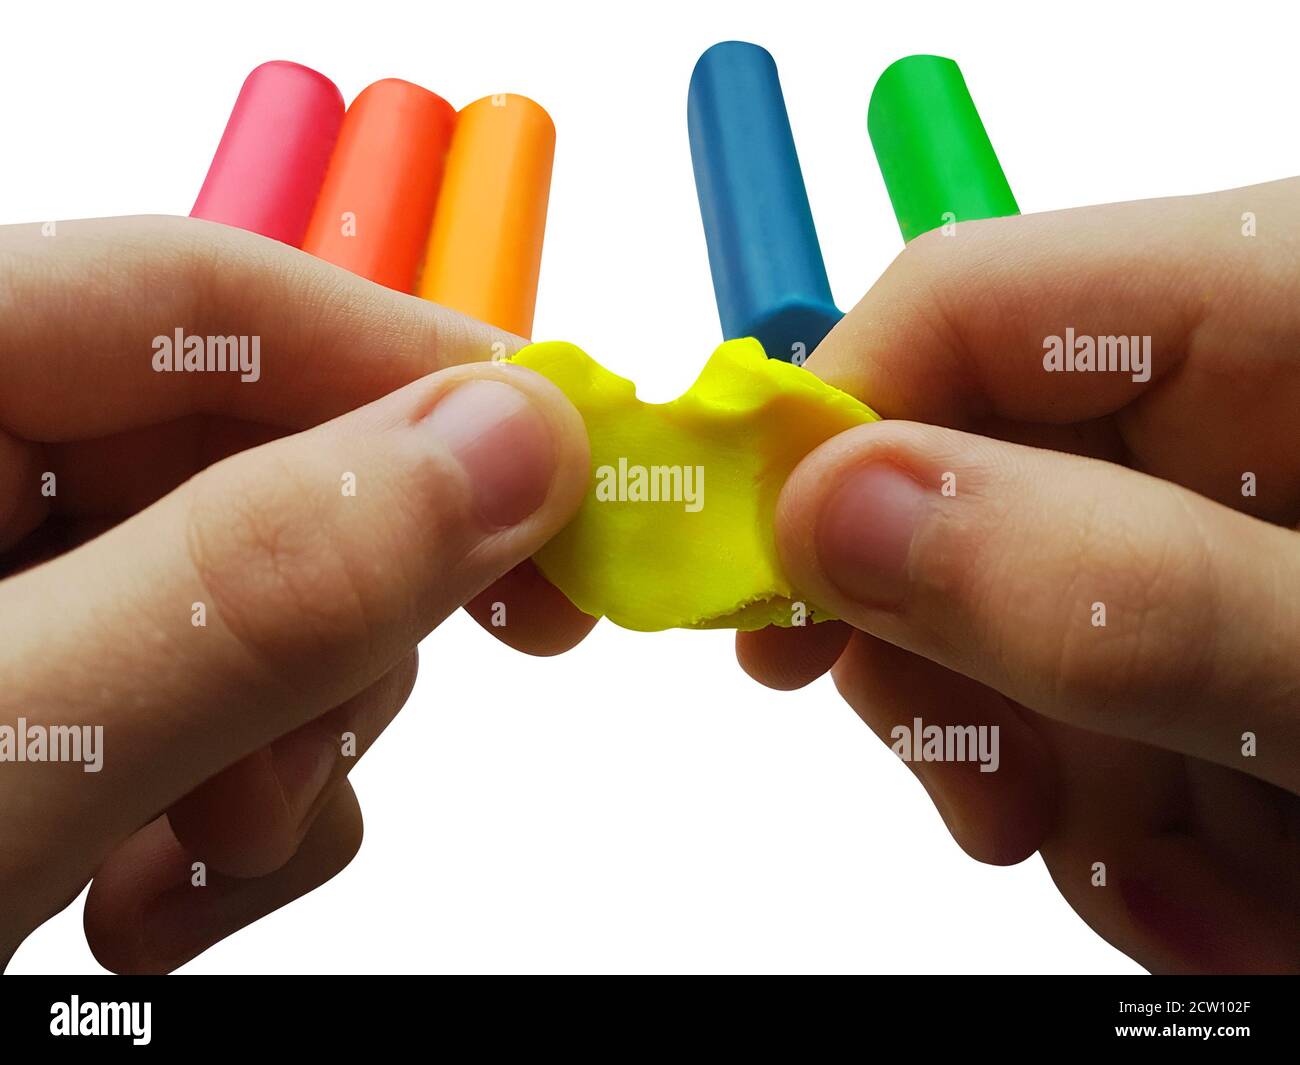 Making plasticine figures Stock Photo - Alamy